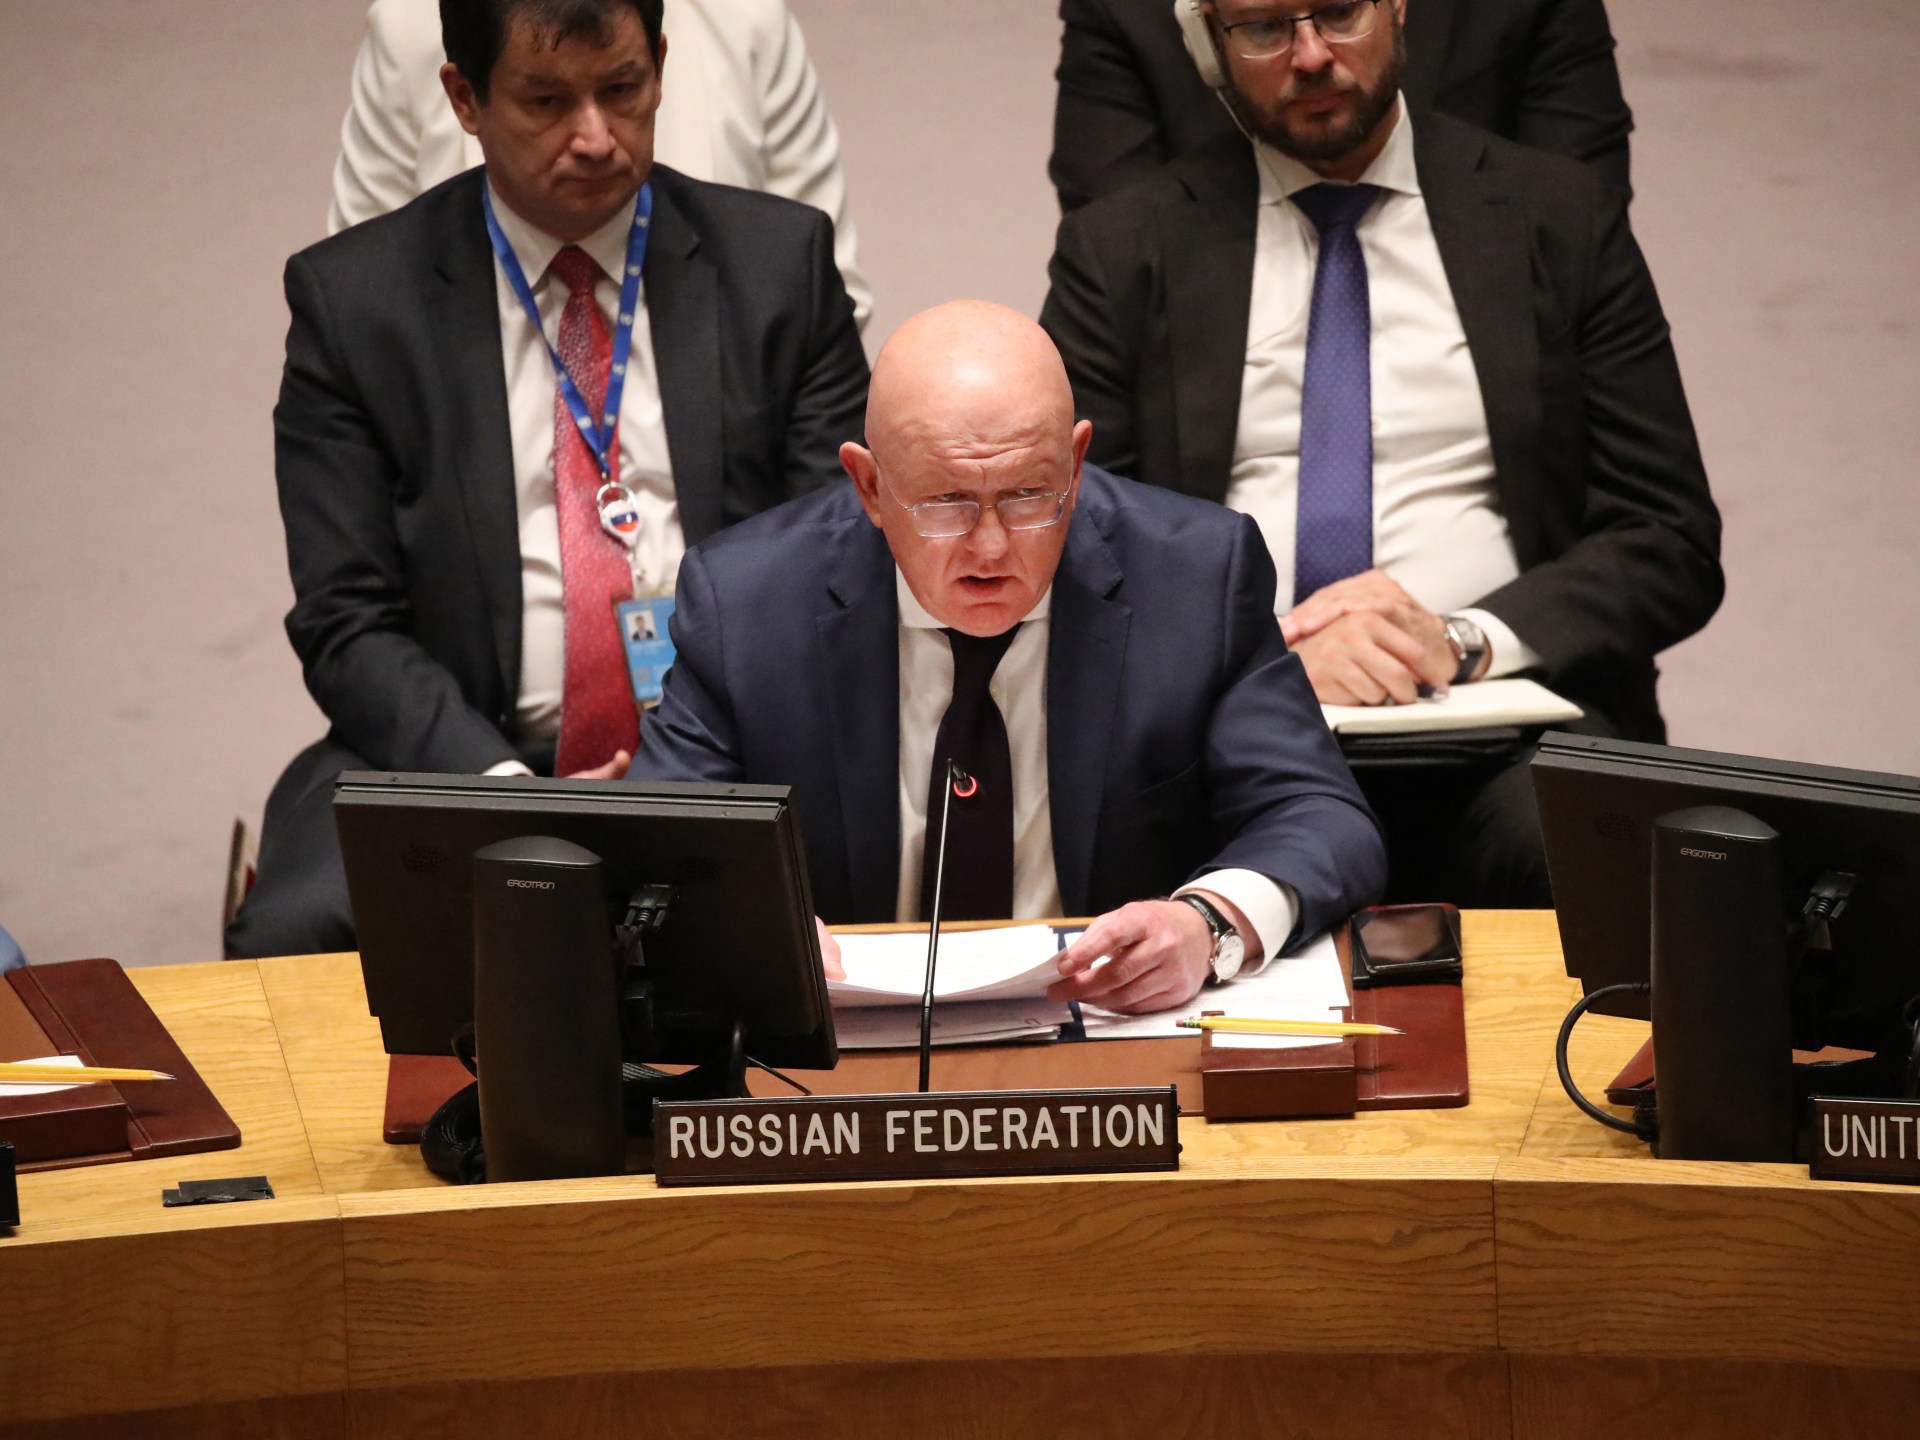 روسيا استخدمت حق النقض ضد قرار الأمم المتحدة بشأن ضم أوكرانيا ، والصين تمتنع عن التصويت | أخبار الحرب بين روسيا وأوكرانيا